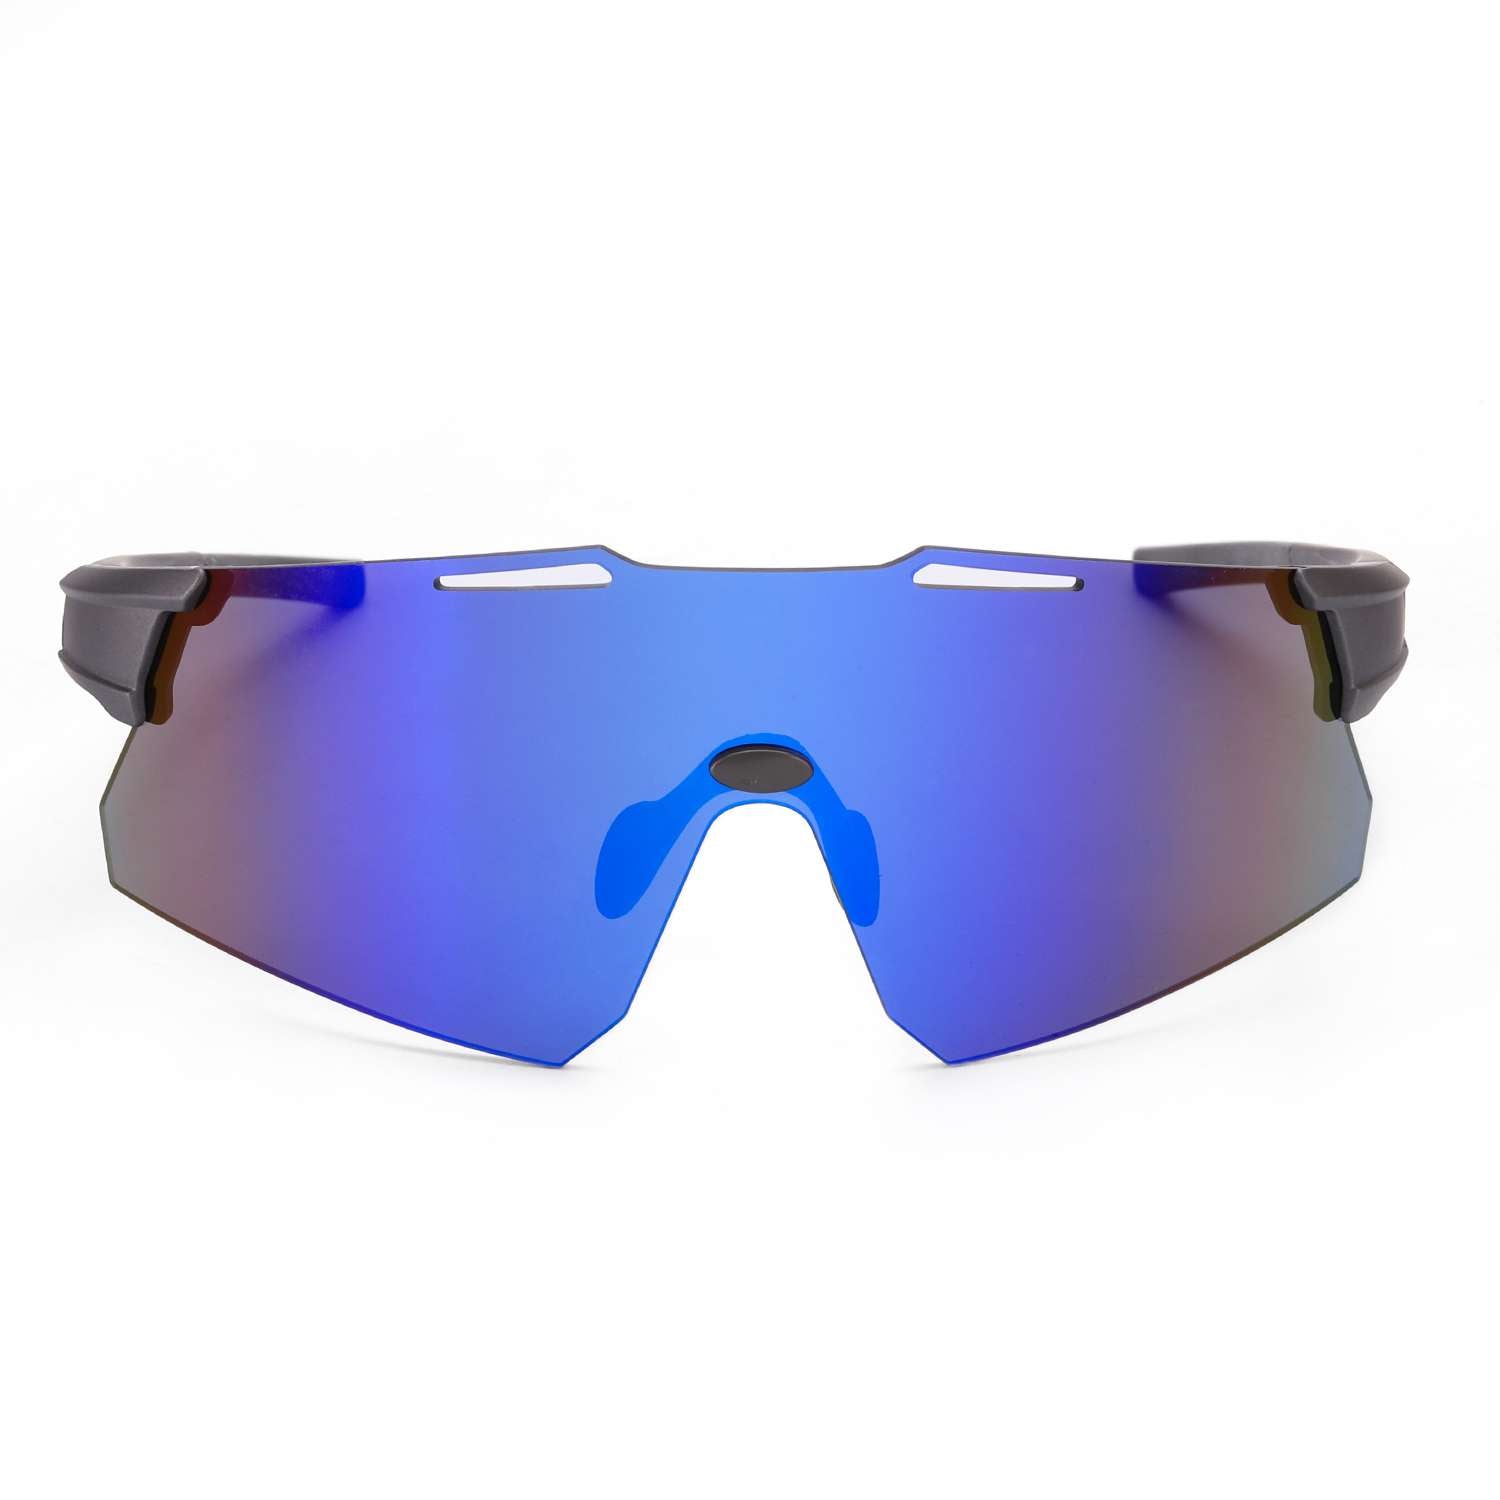 LVIOE P-Viper Oversized Modern Design Sports Sunglasses for Unisex, Dark Blue